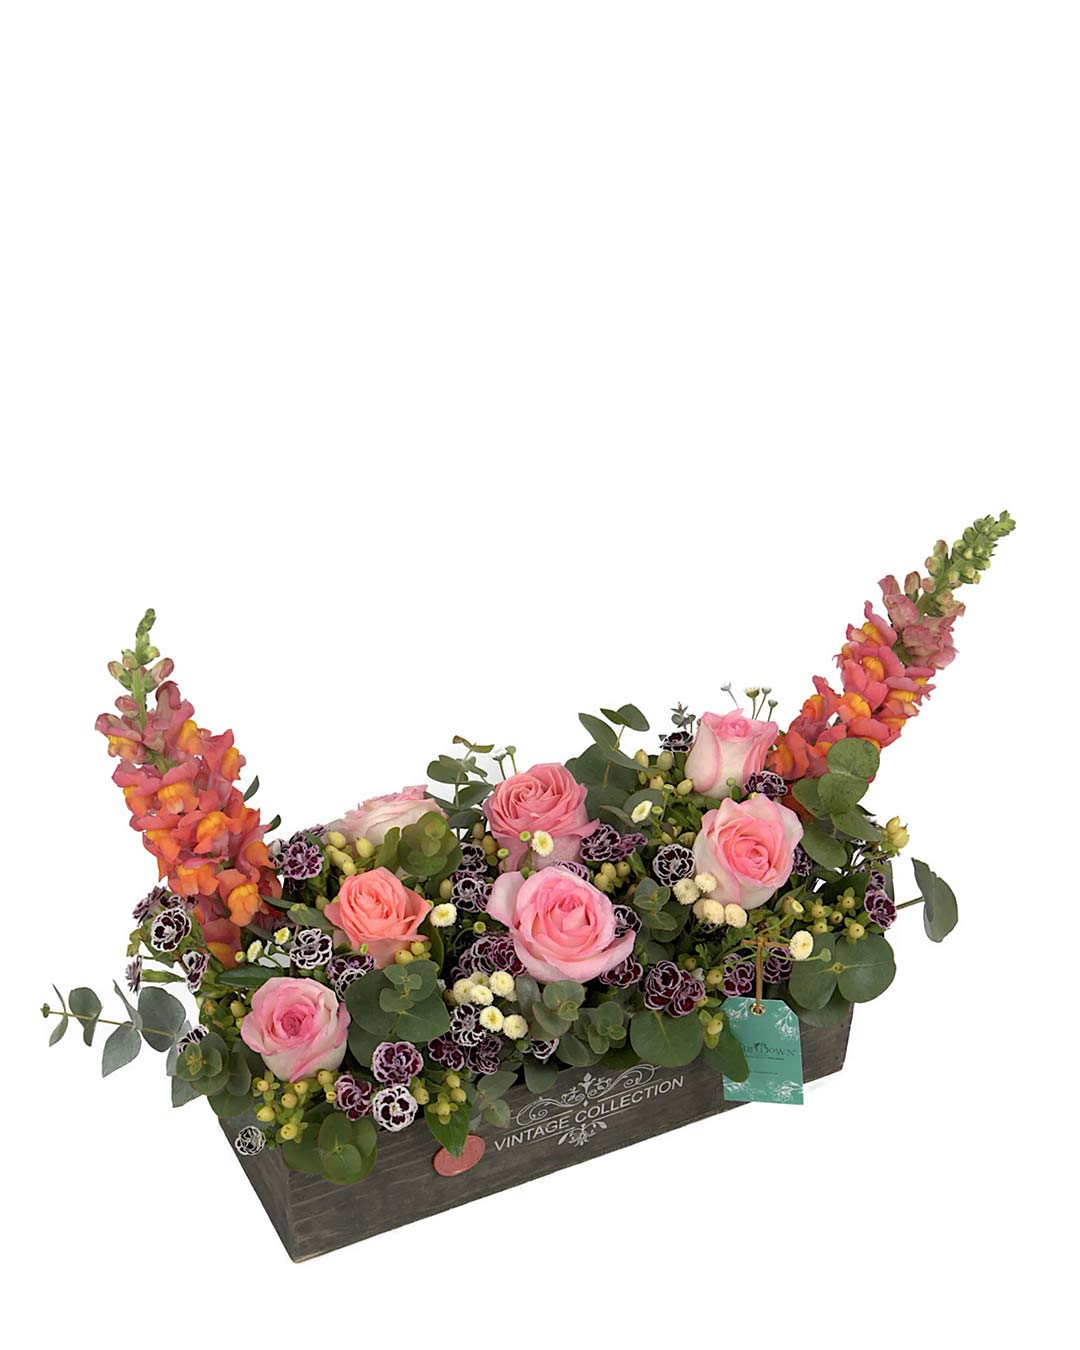 Arreglo de flores naturales con rosas, perritos, eucaliptos, clavelinas y bombones en caja rústica de madera.